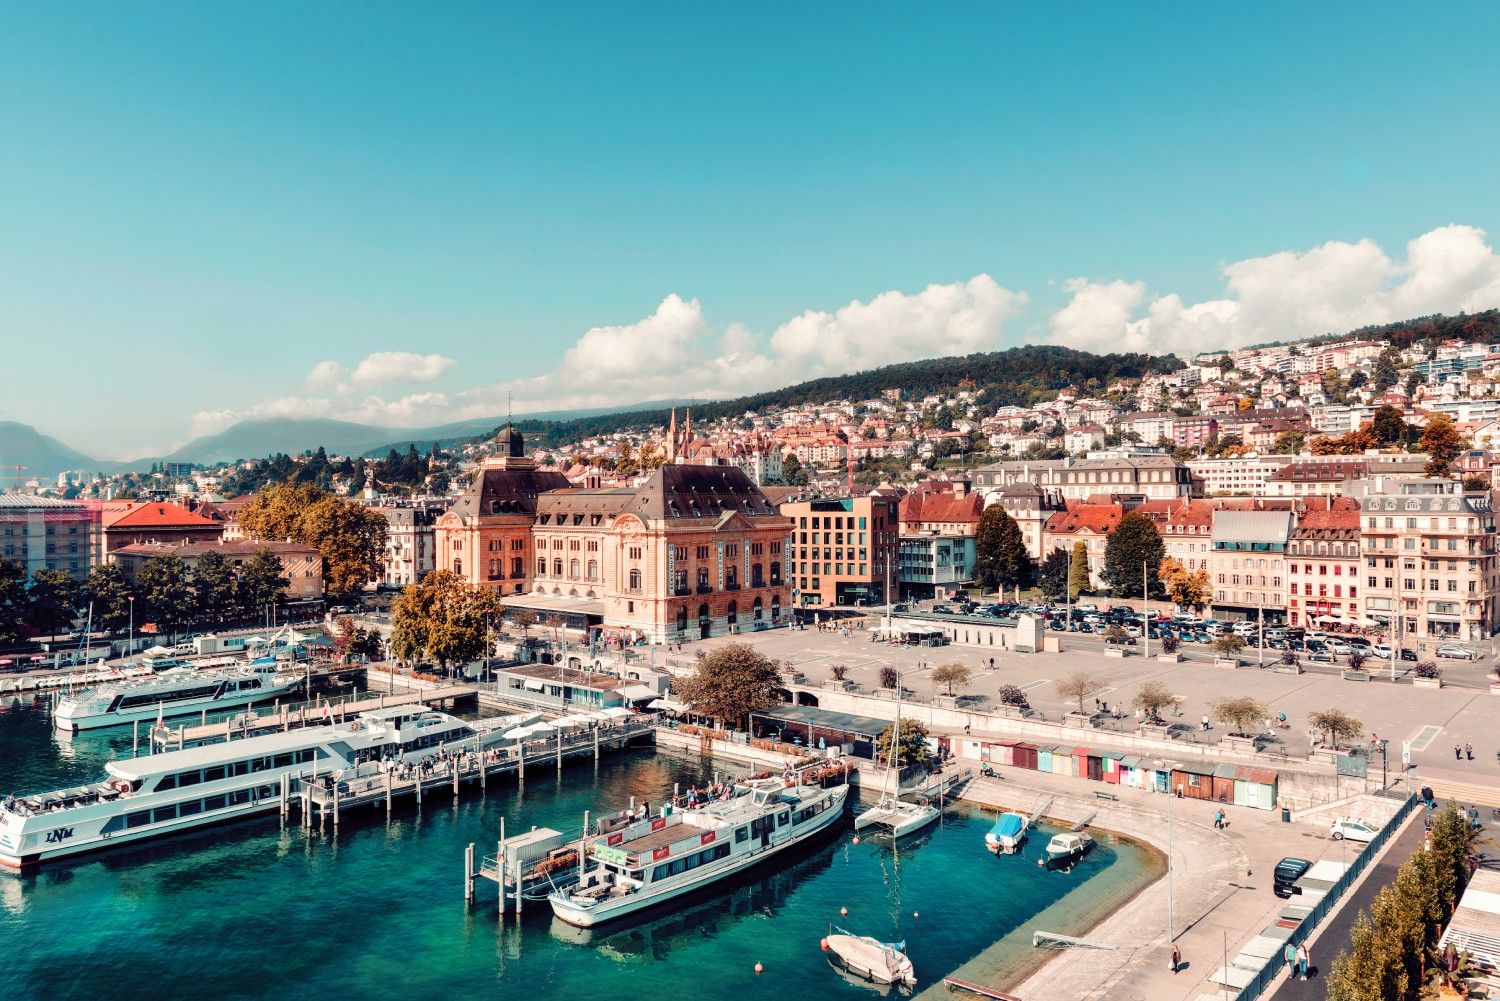 Vista del puerto de Neuchâtel, en el lago del mismo nombre